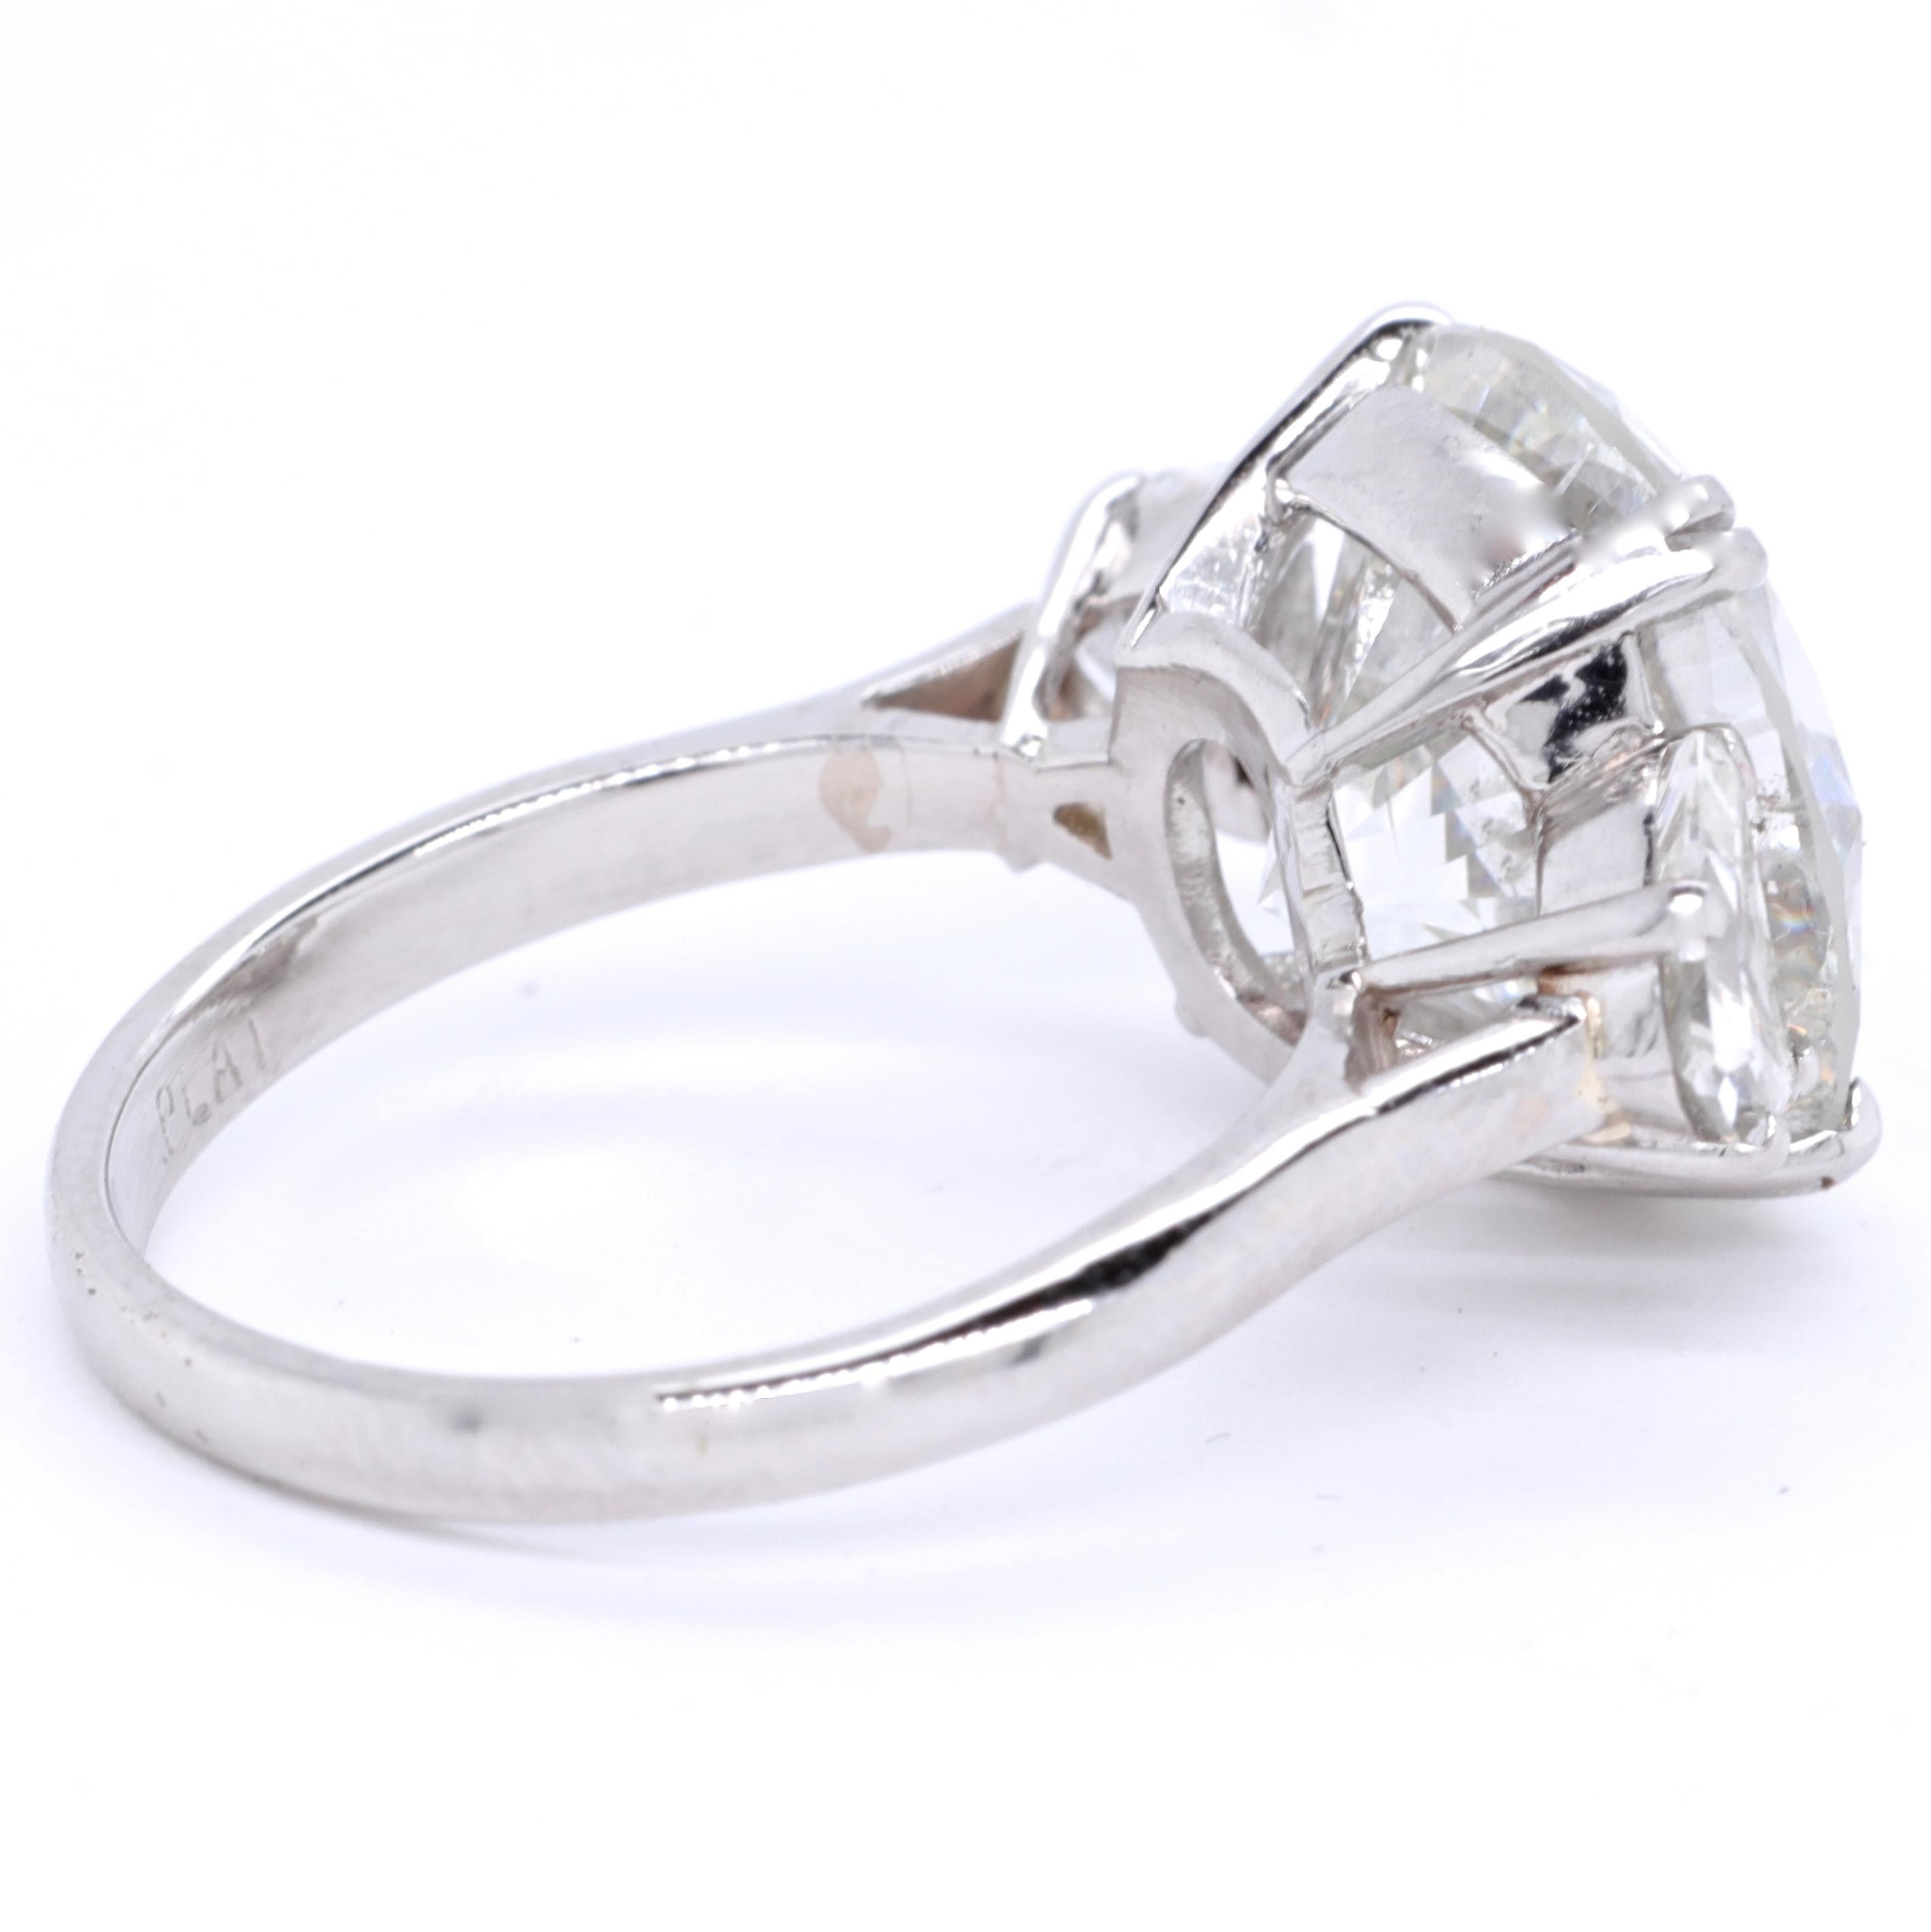 Vintage GIA 7.97 Carat Brilliant Cut Diamond Platinum Ring 1